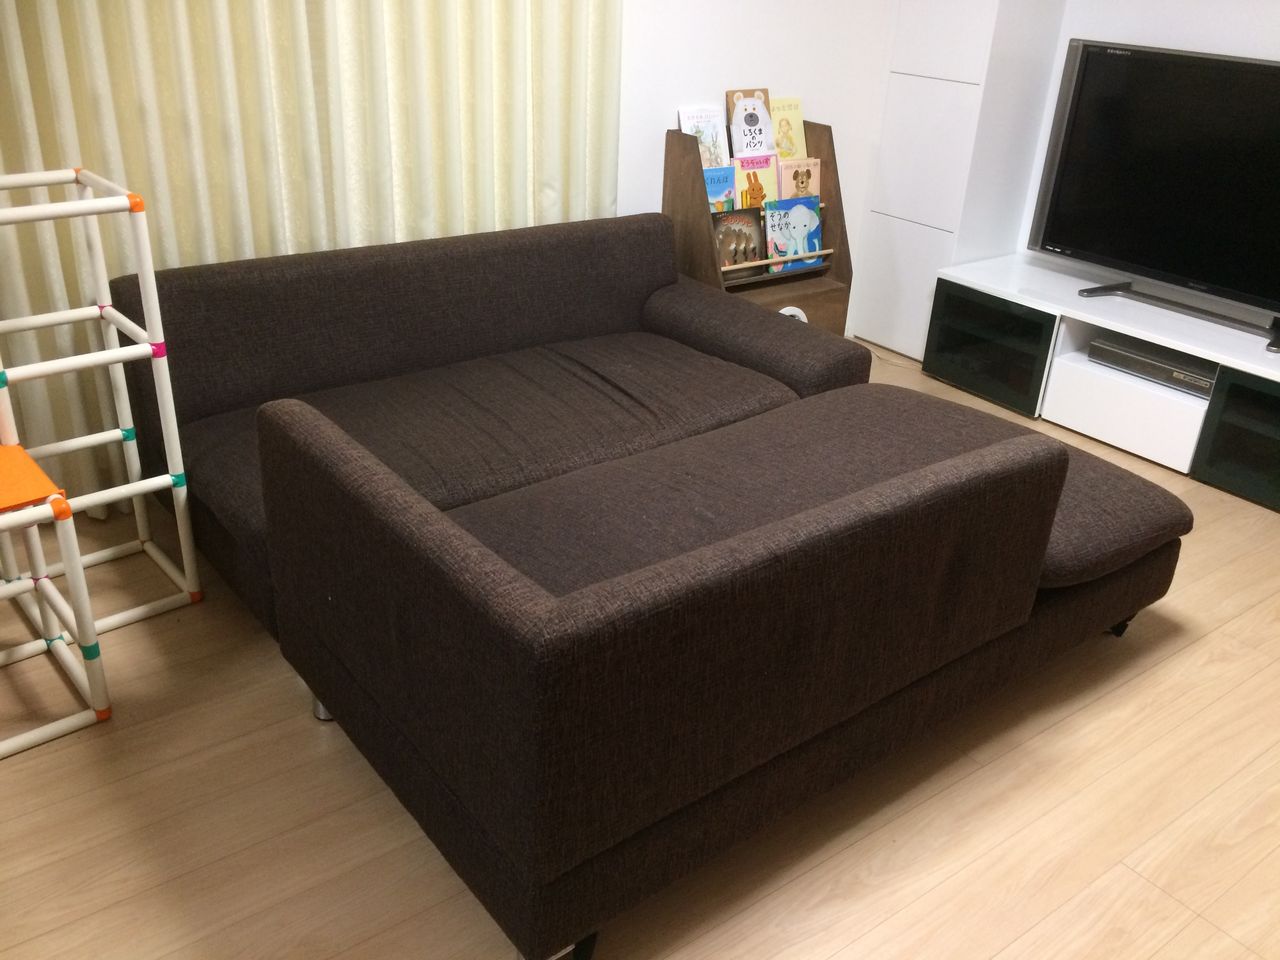 娘 気分が良い 群集 ベッド を ソファー に する 方法 sozokobetsu.jp